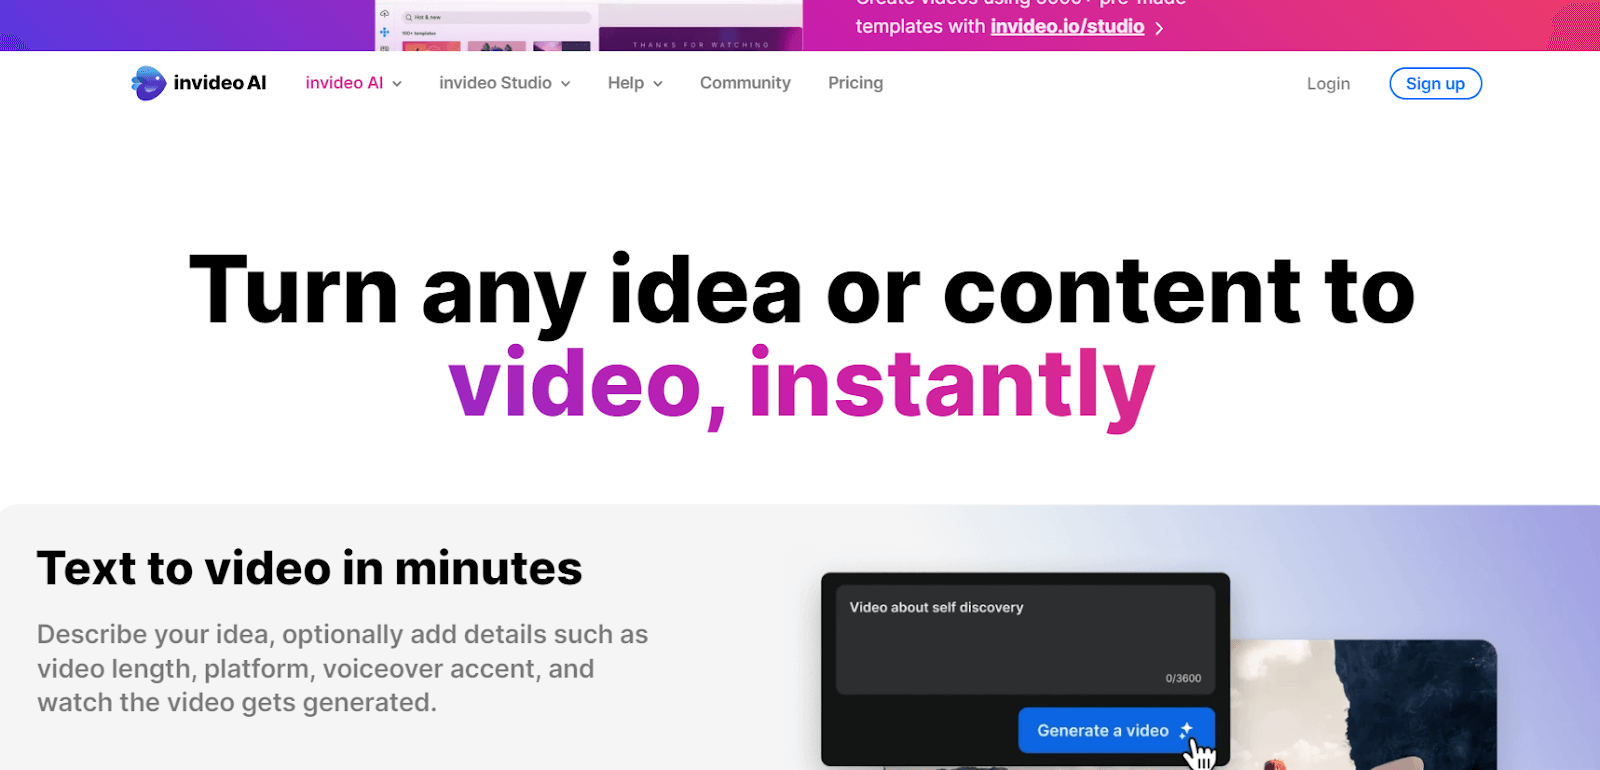  Transformez n'importe quelle idée ou contenu en vidéo, instantanément.  